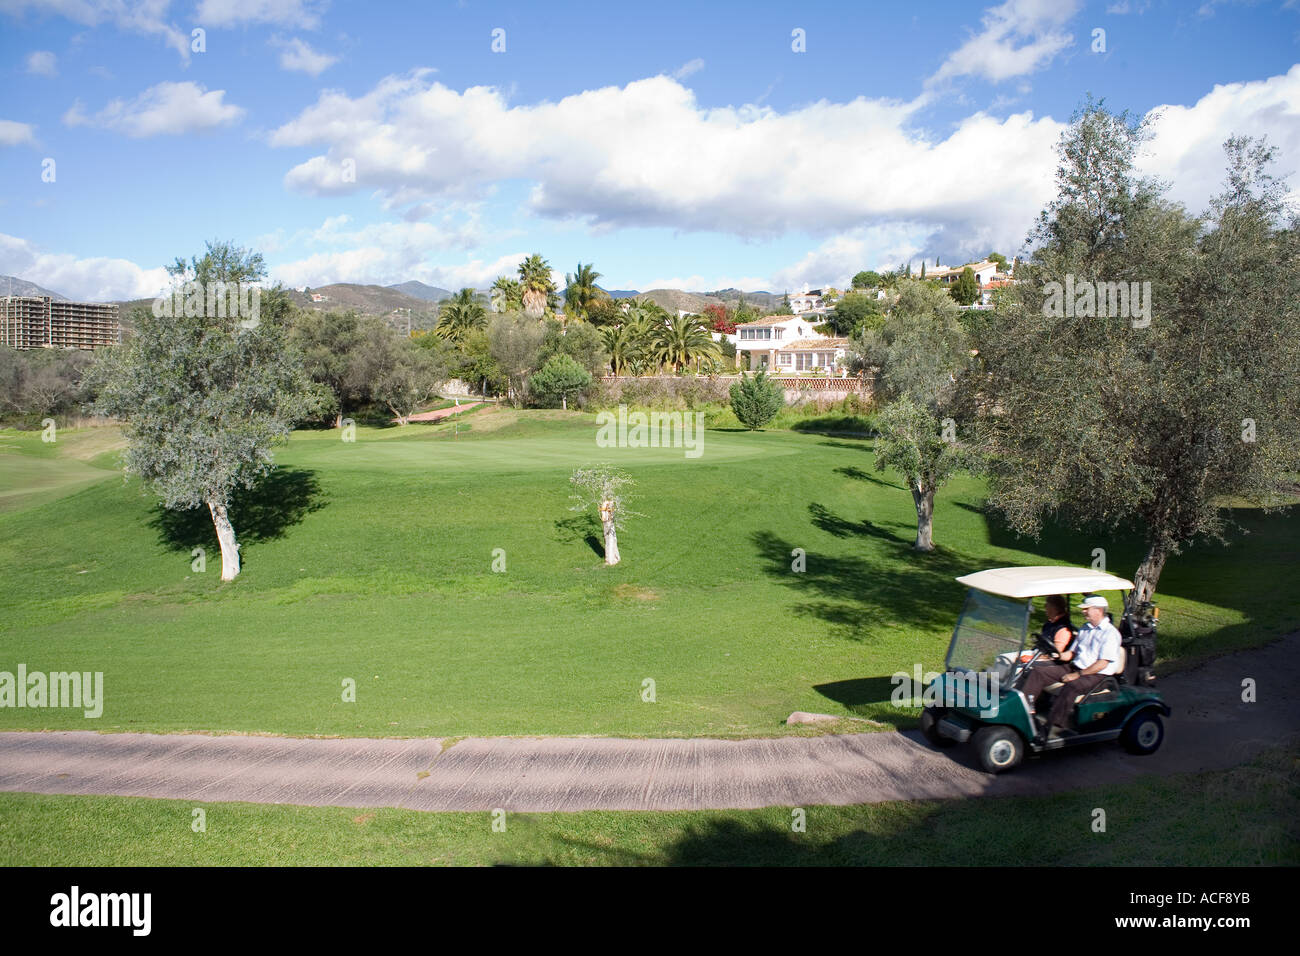 Campo de Golf SpainGolf curso cerca de Marbella golf Links Golf Green golfer fairway deporte ejercicio recreación Foto de stock